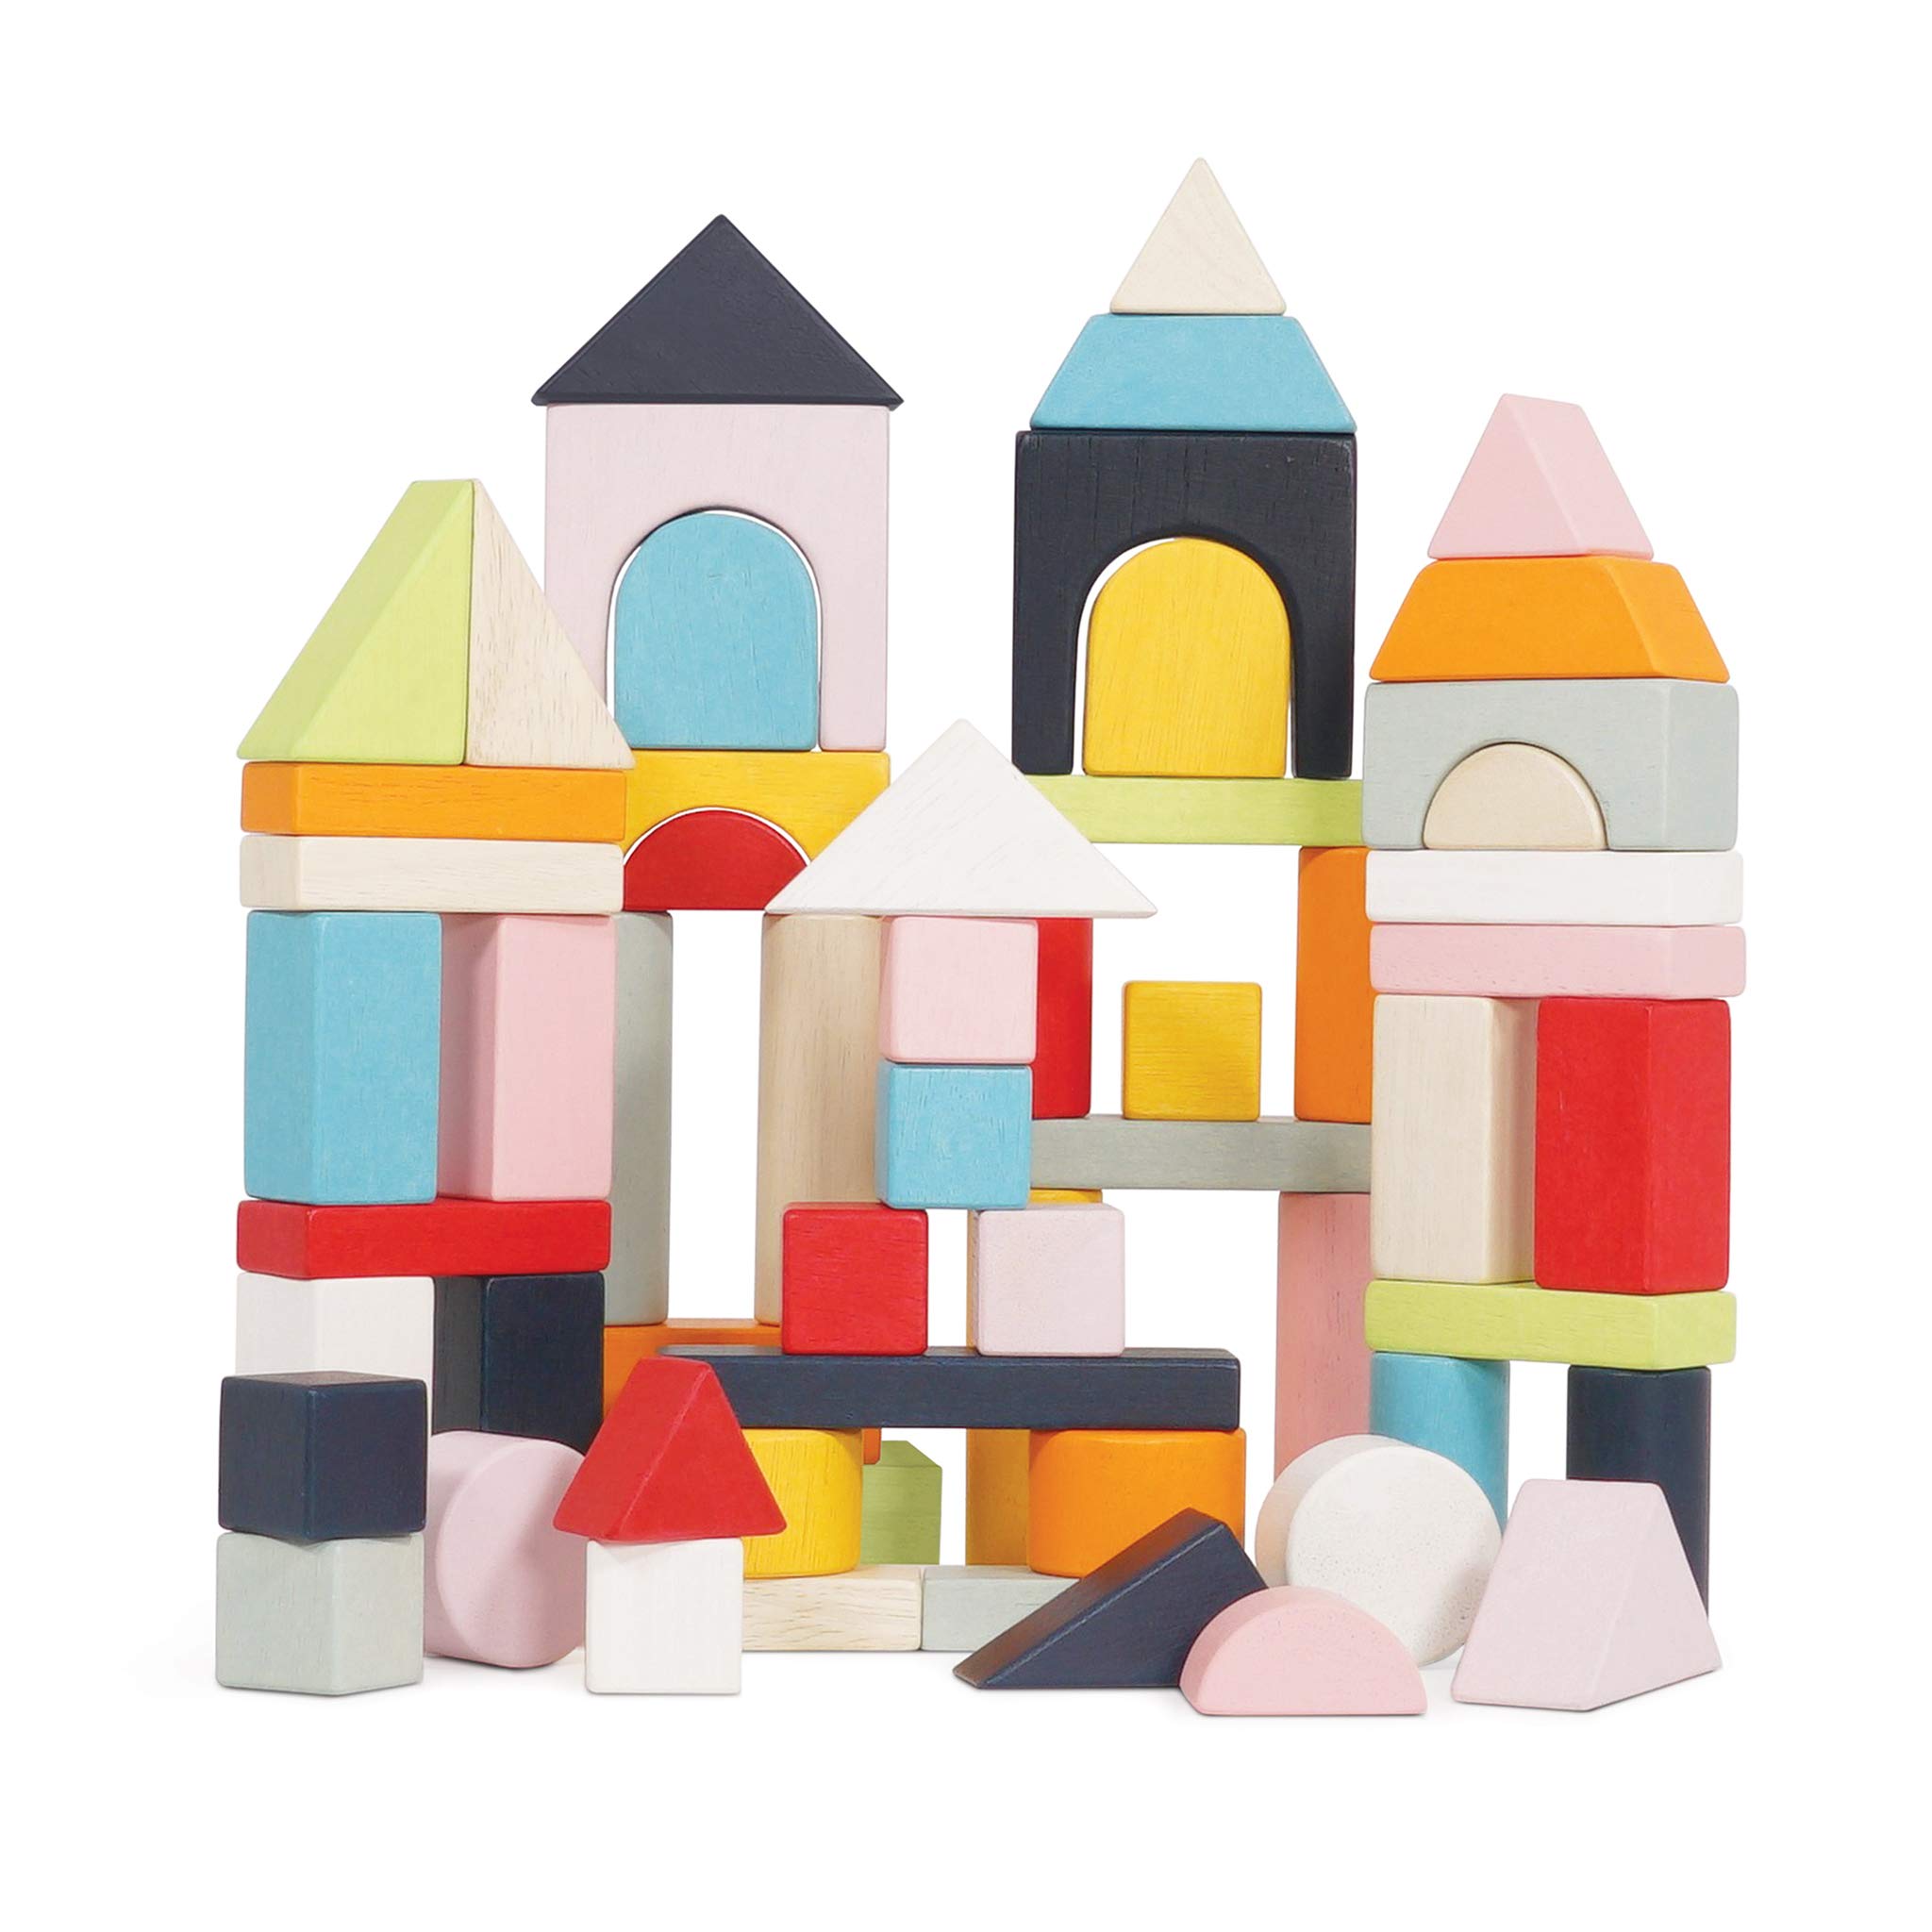 Le Toy Van - Educational Wooden Building Blocks 60 Piece Set Toy | Montessori Style Shape & Colour Development Toy - Suitable for 12 Months + (PL135)